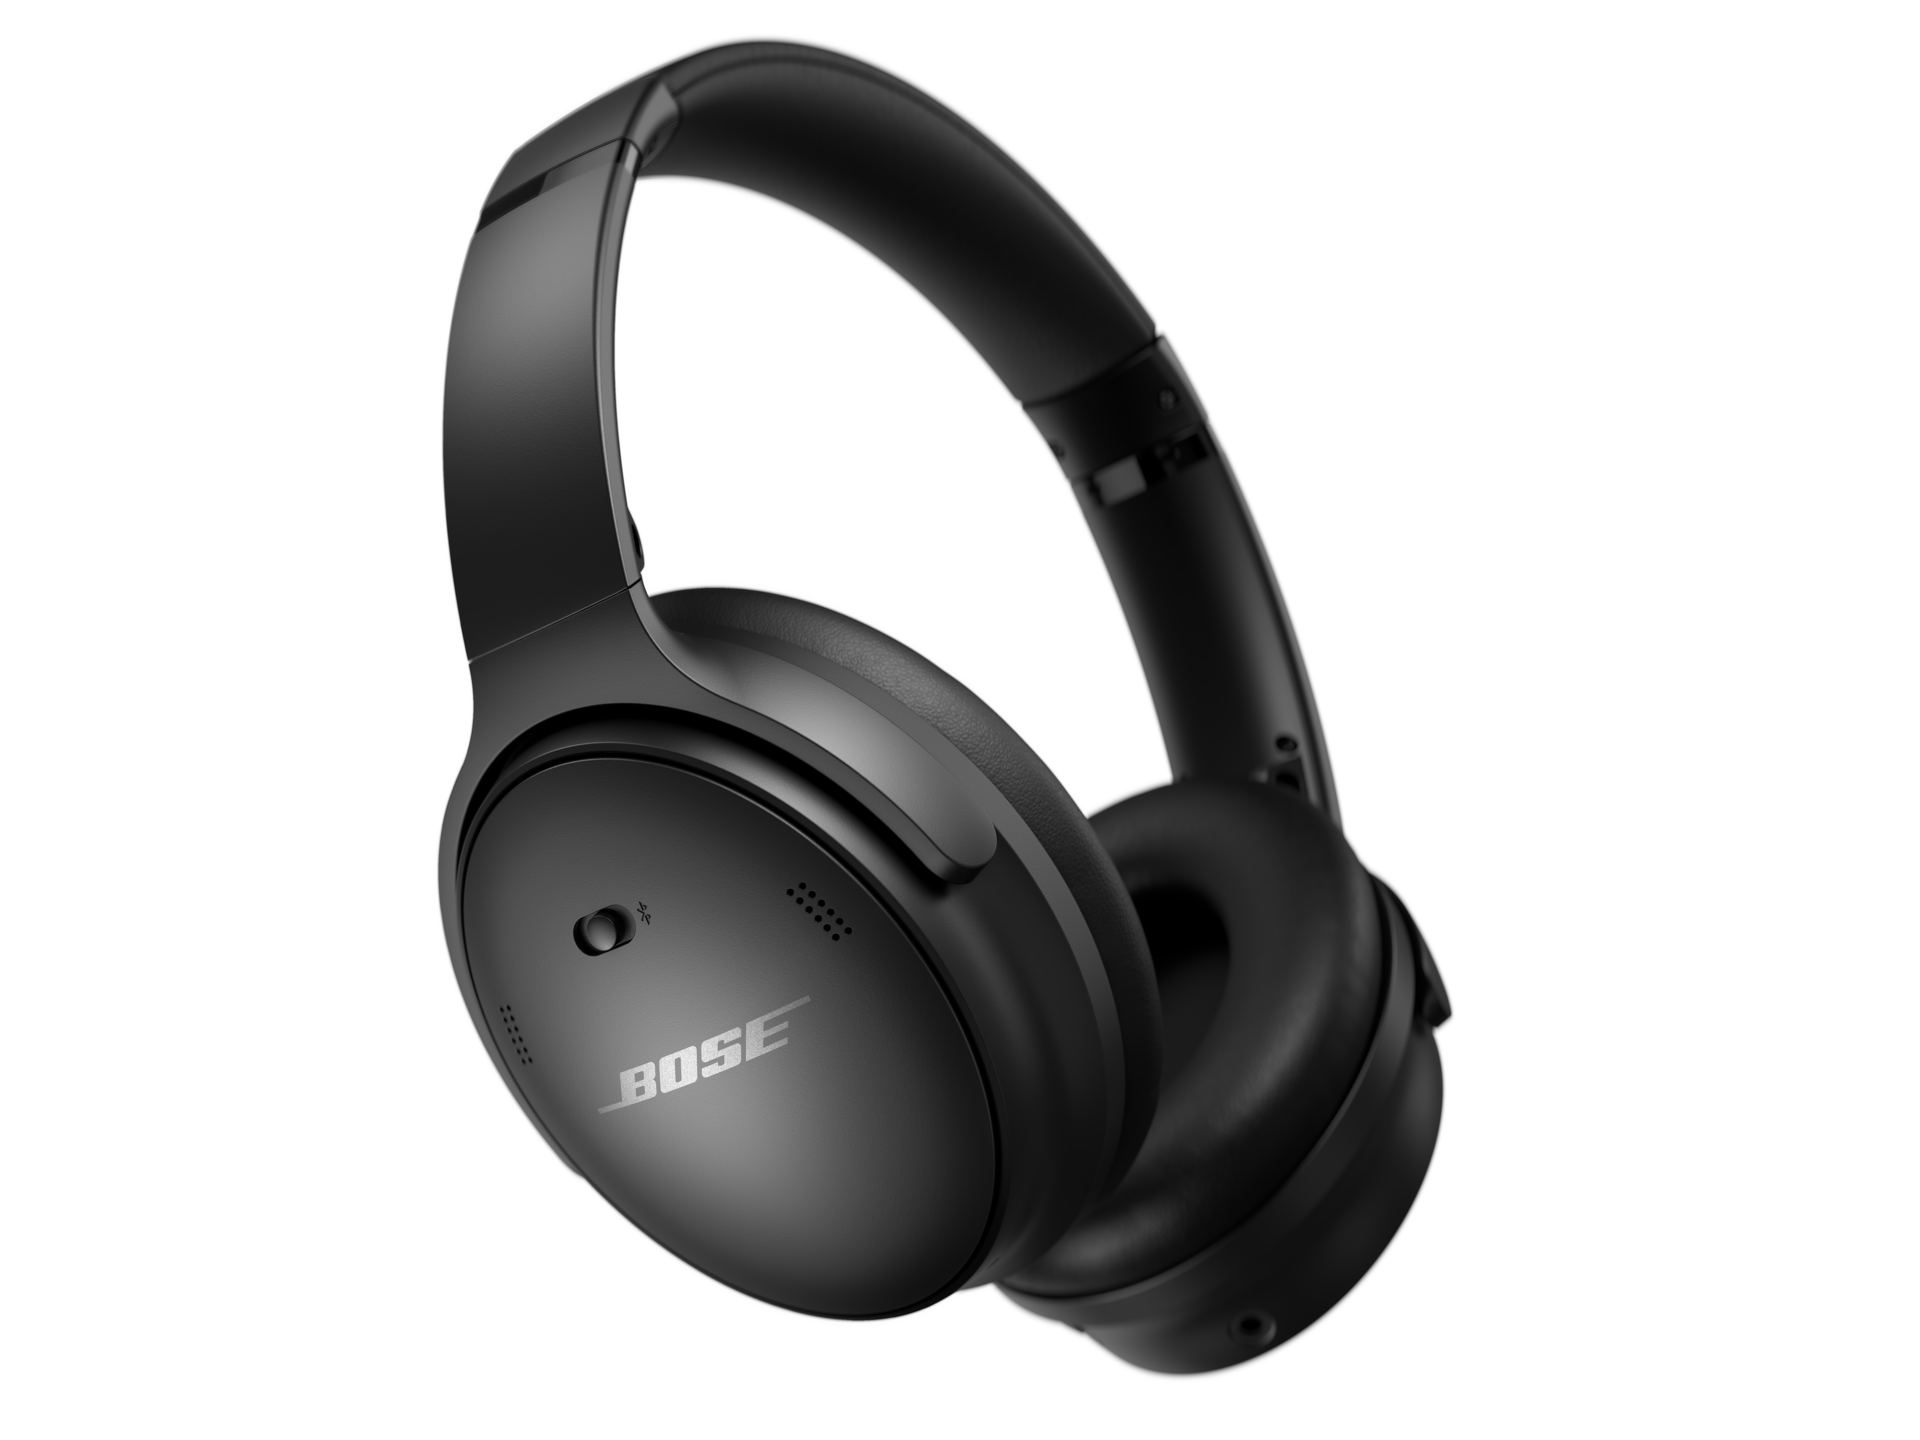 Review lengkap headphone dari Bose  Quiet Comfort 45